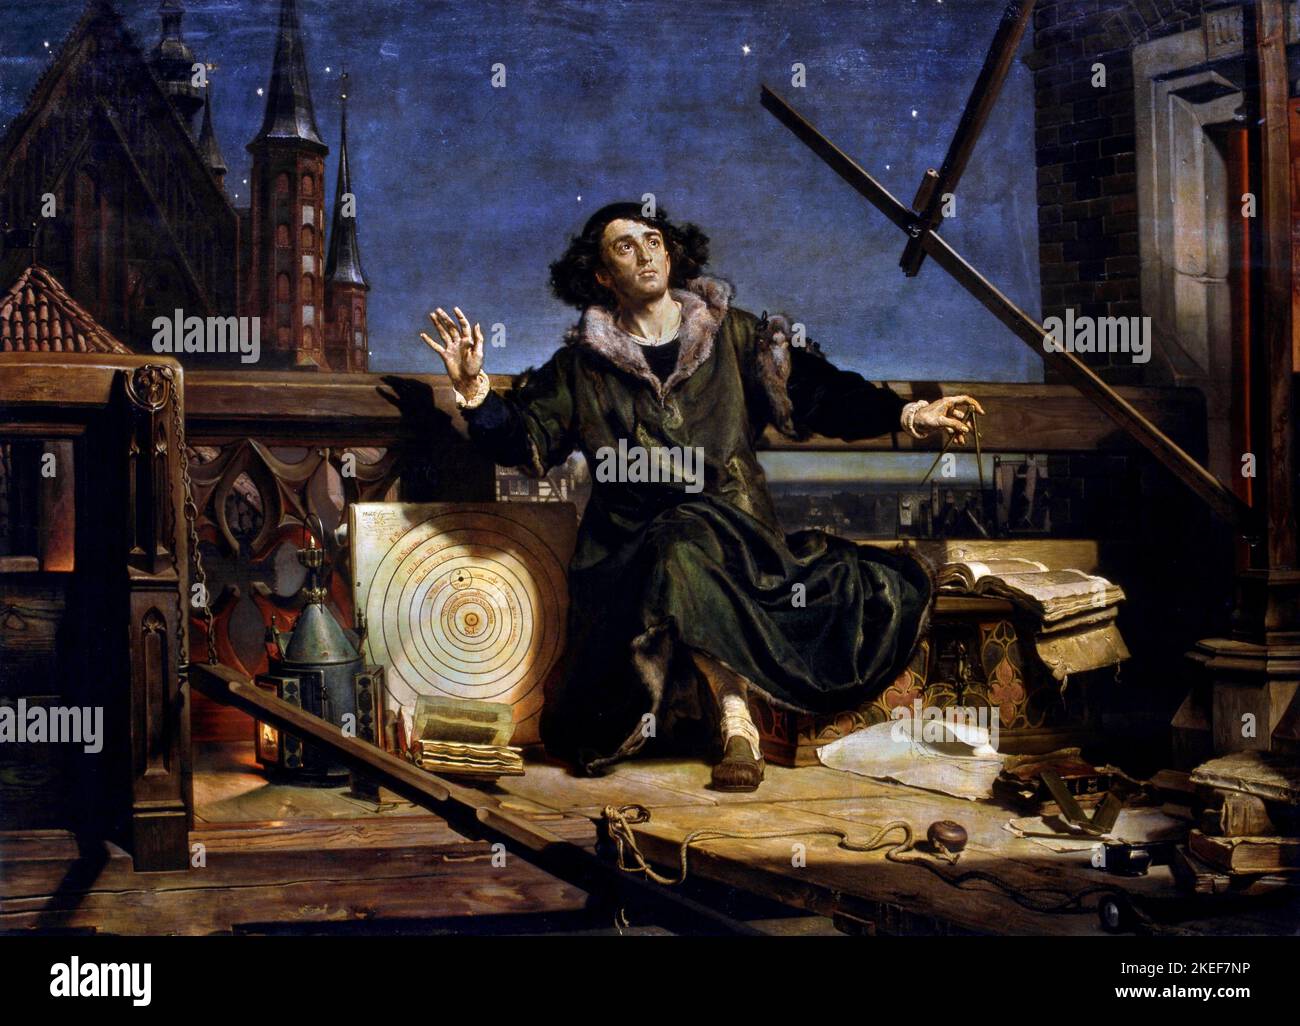 Jan Matejko, astronome Copernicus, ou conversations avec Dieu, 1872, huile sur toile, Musée de l'Université de Jagiellonian, Cracovie, Pologne. Banque D'Images